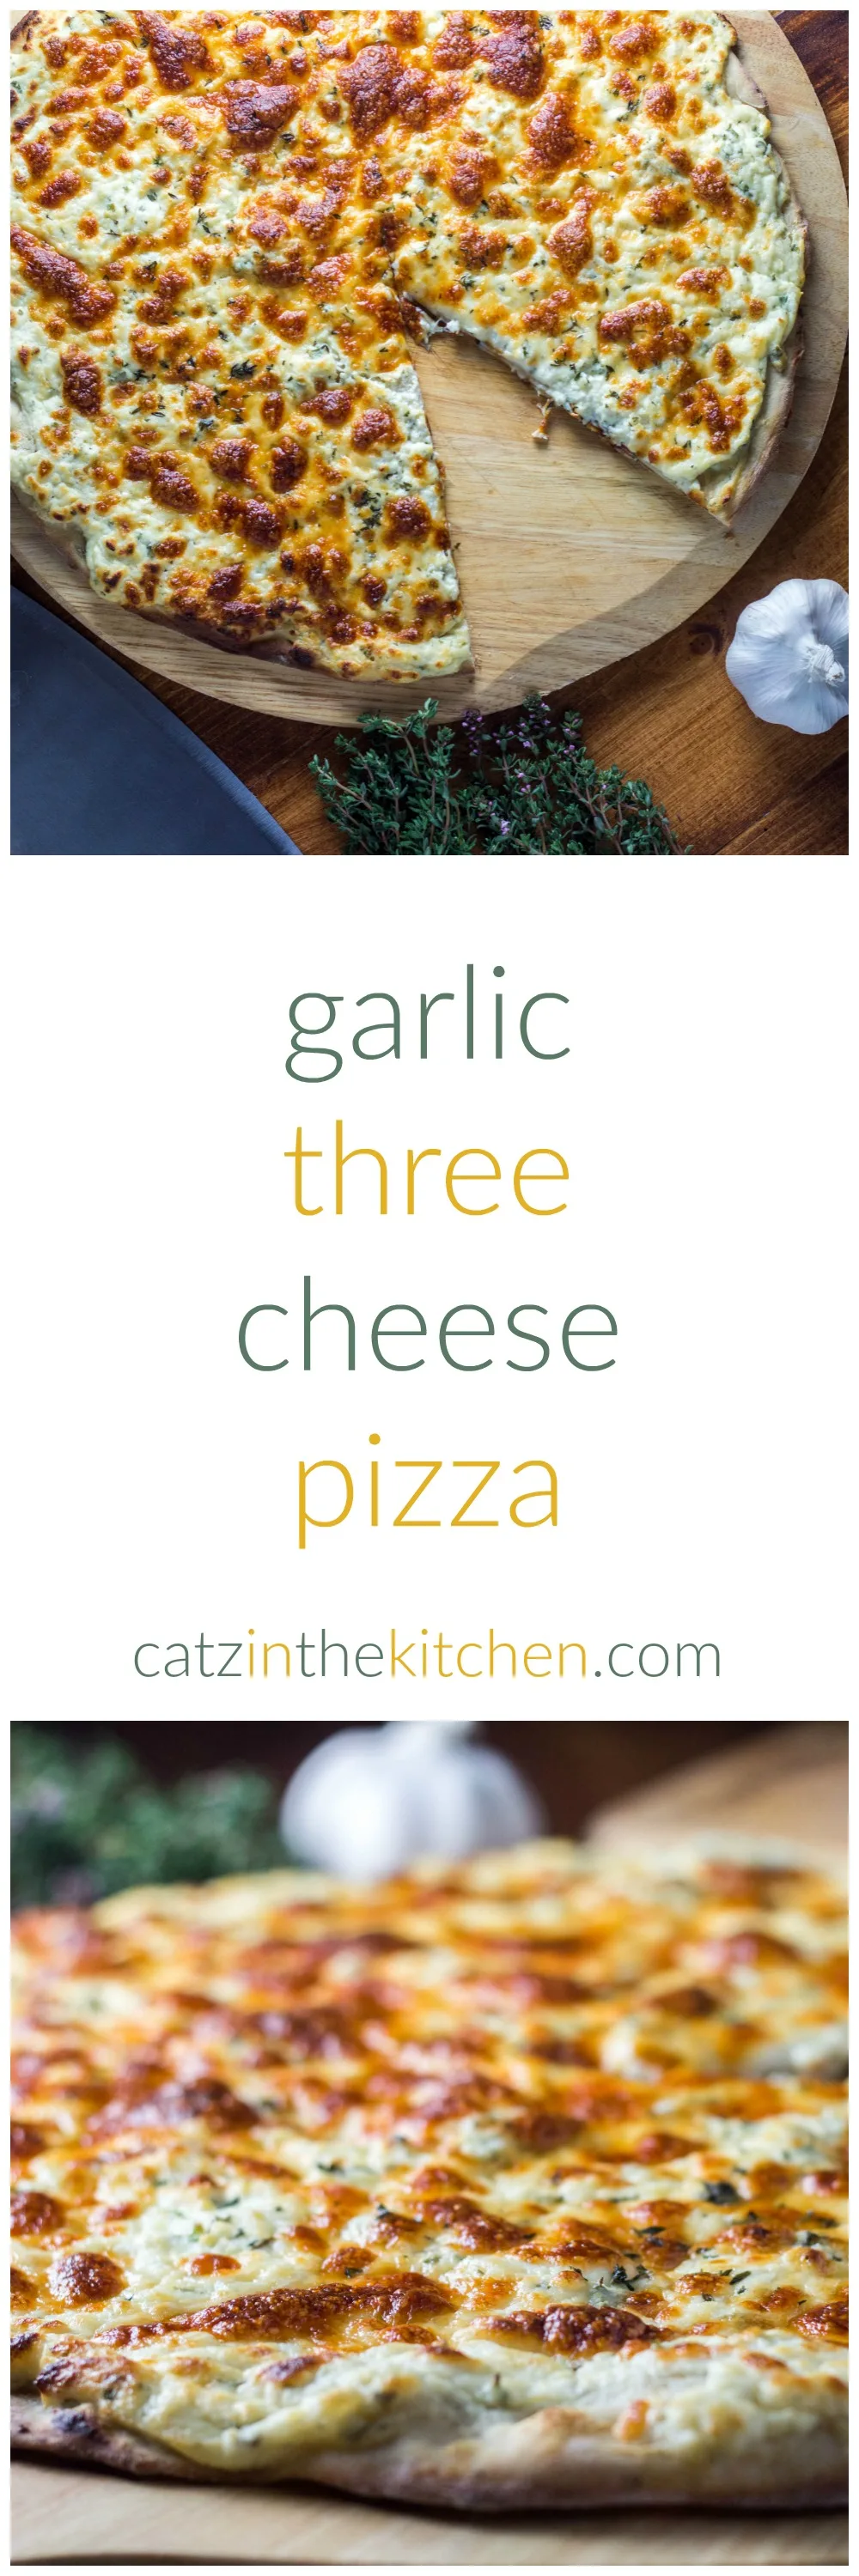 Garlic Three Cheese Pizza | Catz in the Kitchen | catzinthekitchen.com | #recipe #cheese #garlic #pizza